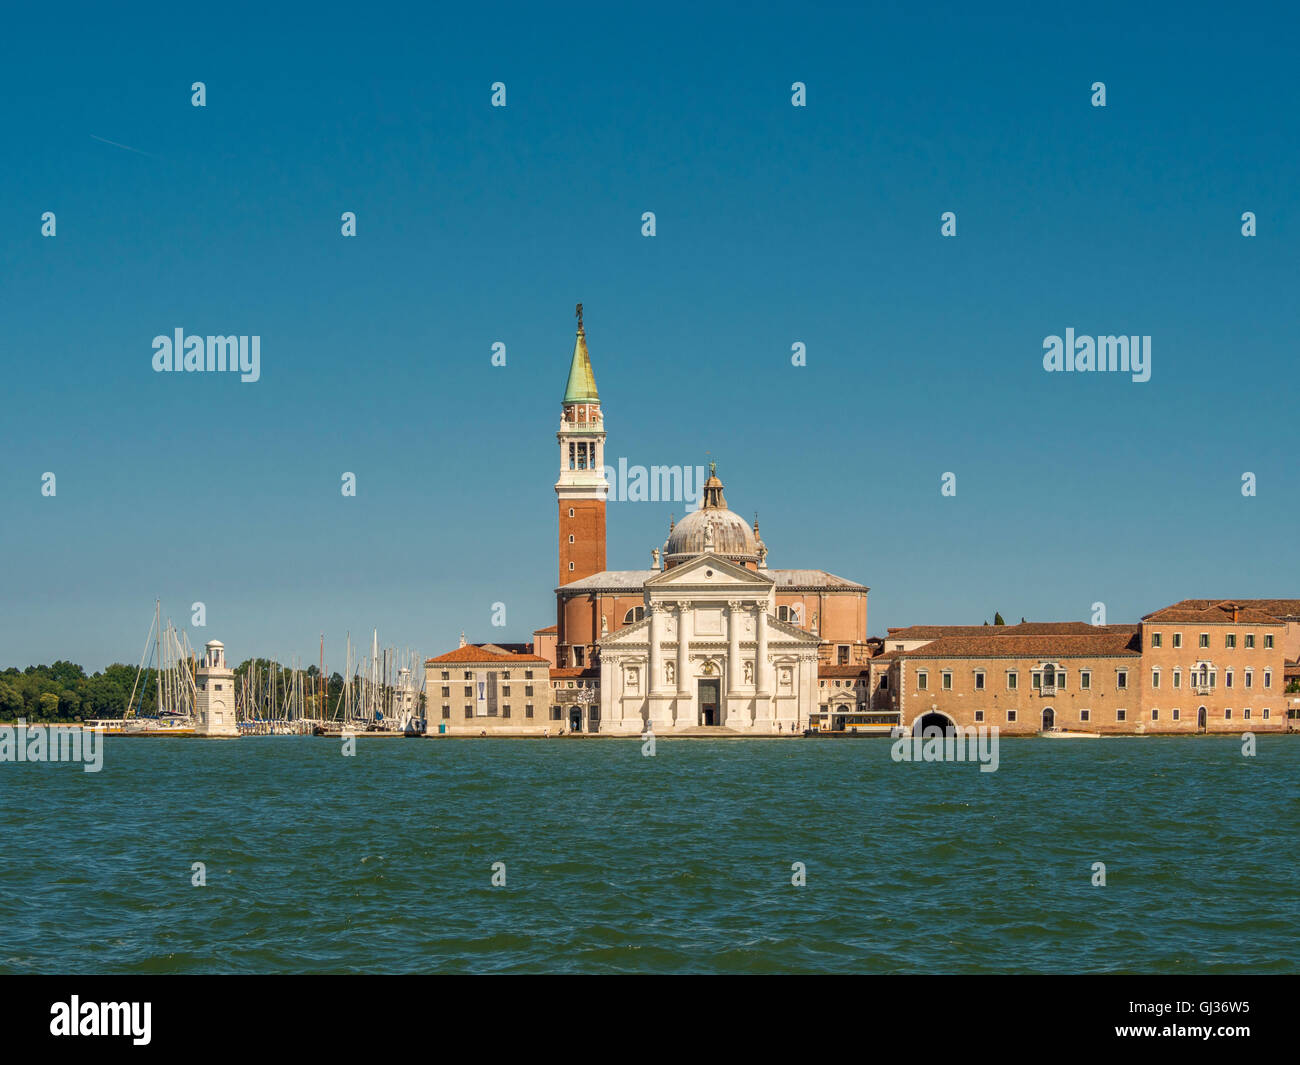 Istria blanca fachada de mármol de la iglesia de San Giorgio Maggiore, en la isla del mismo nombre, la ciudad de Venecia, Italia. Foto de stock